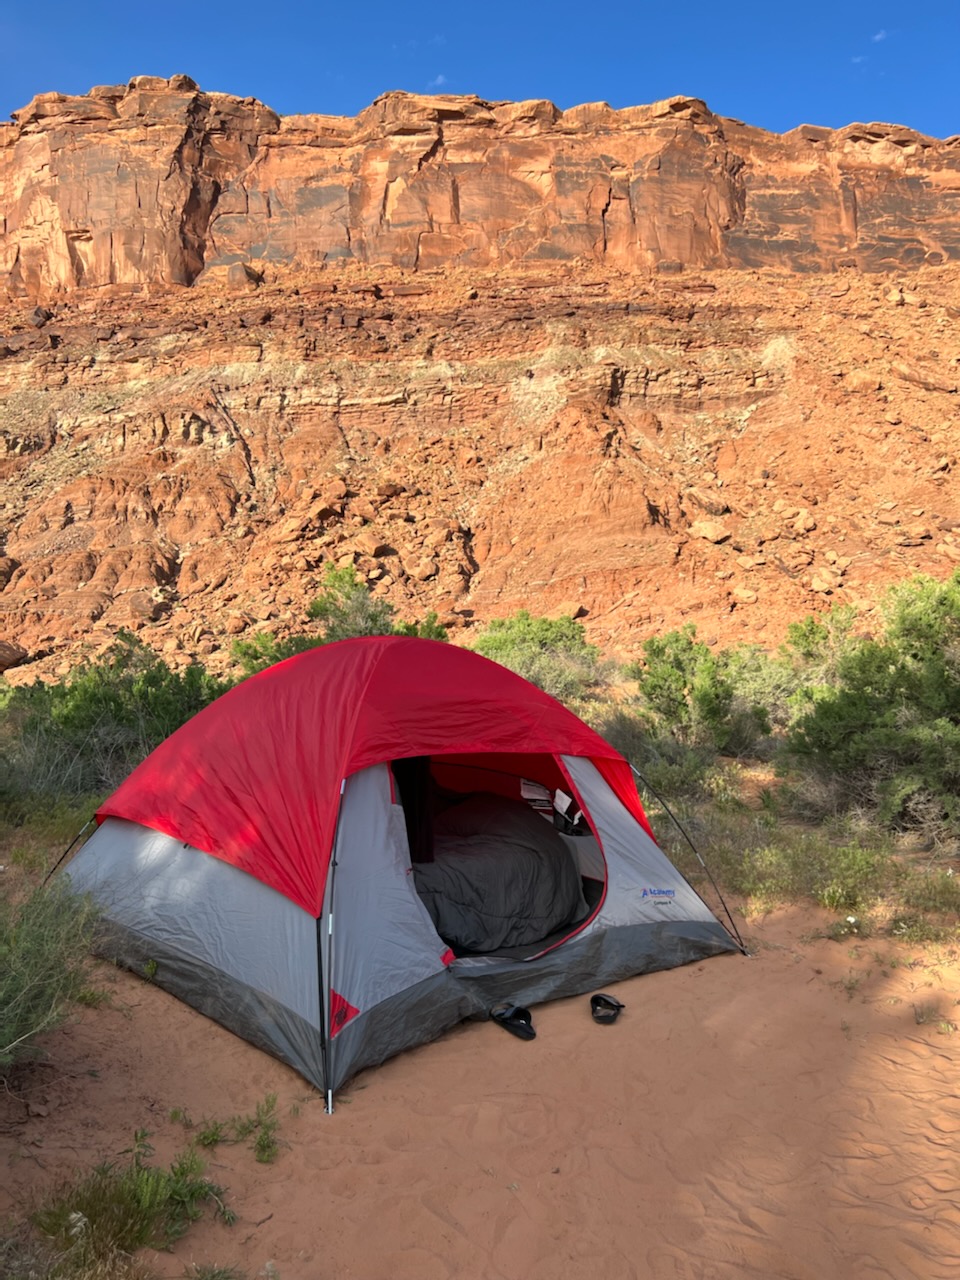 Dakota's camping spot in Moab.